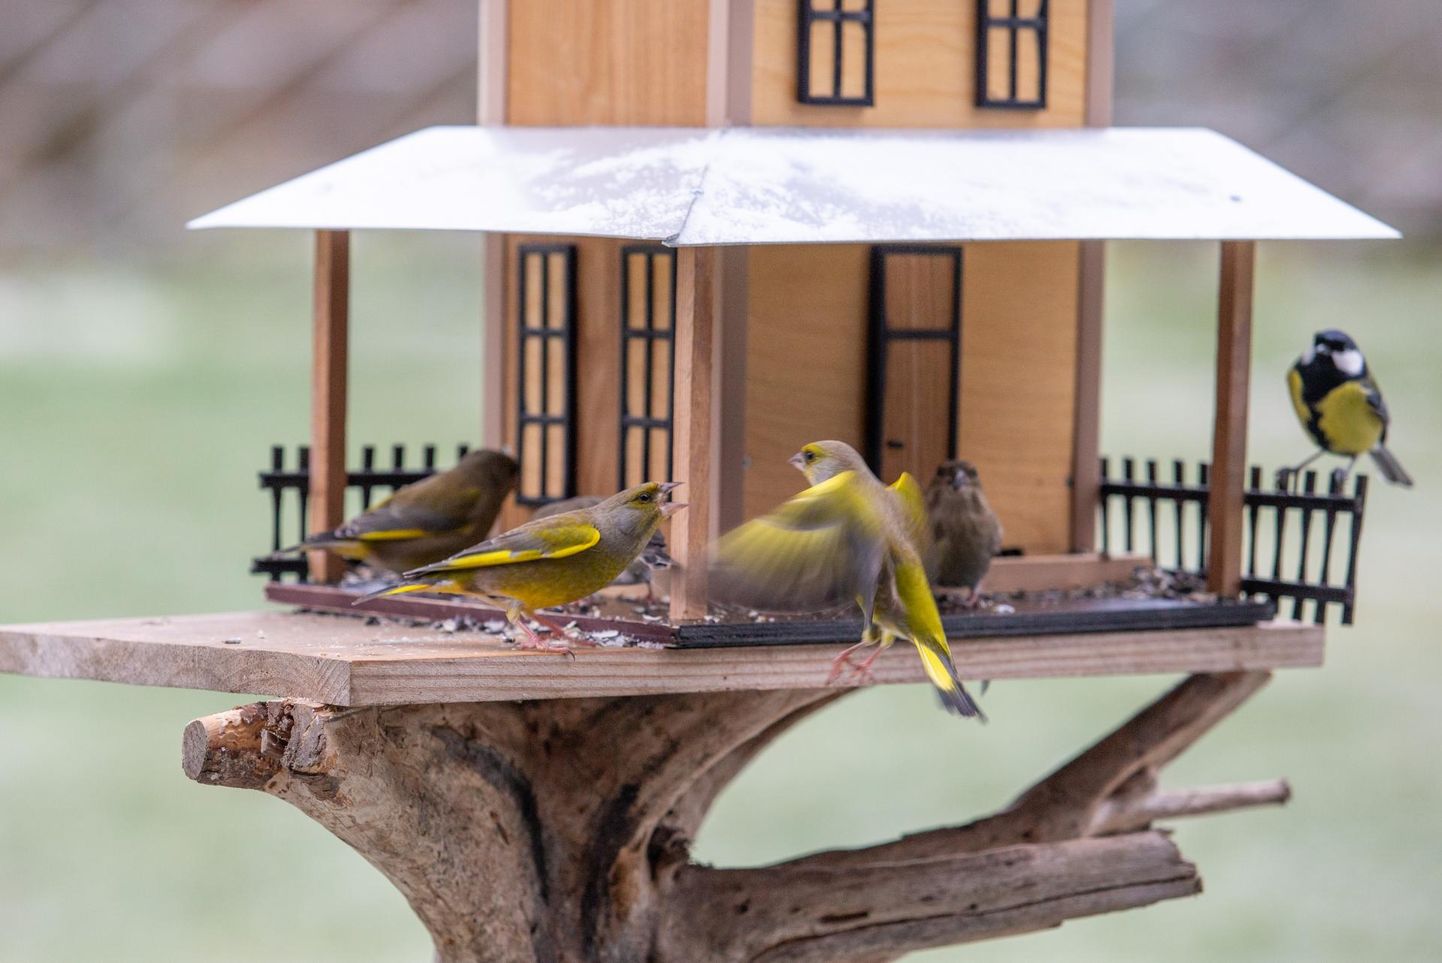 Kaetud toidulauaga linnumajad on hea võimalus aialinde vaadelda.